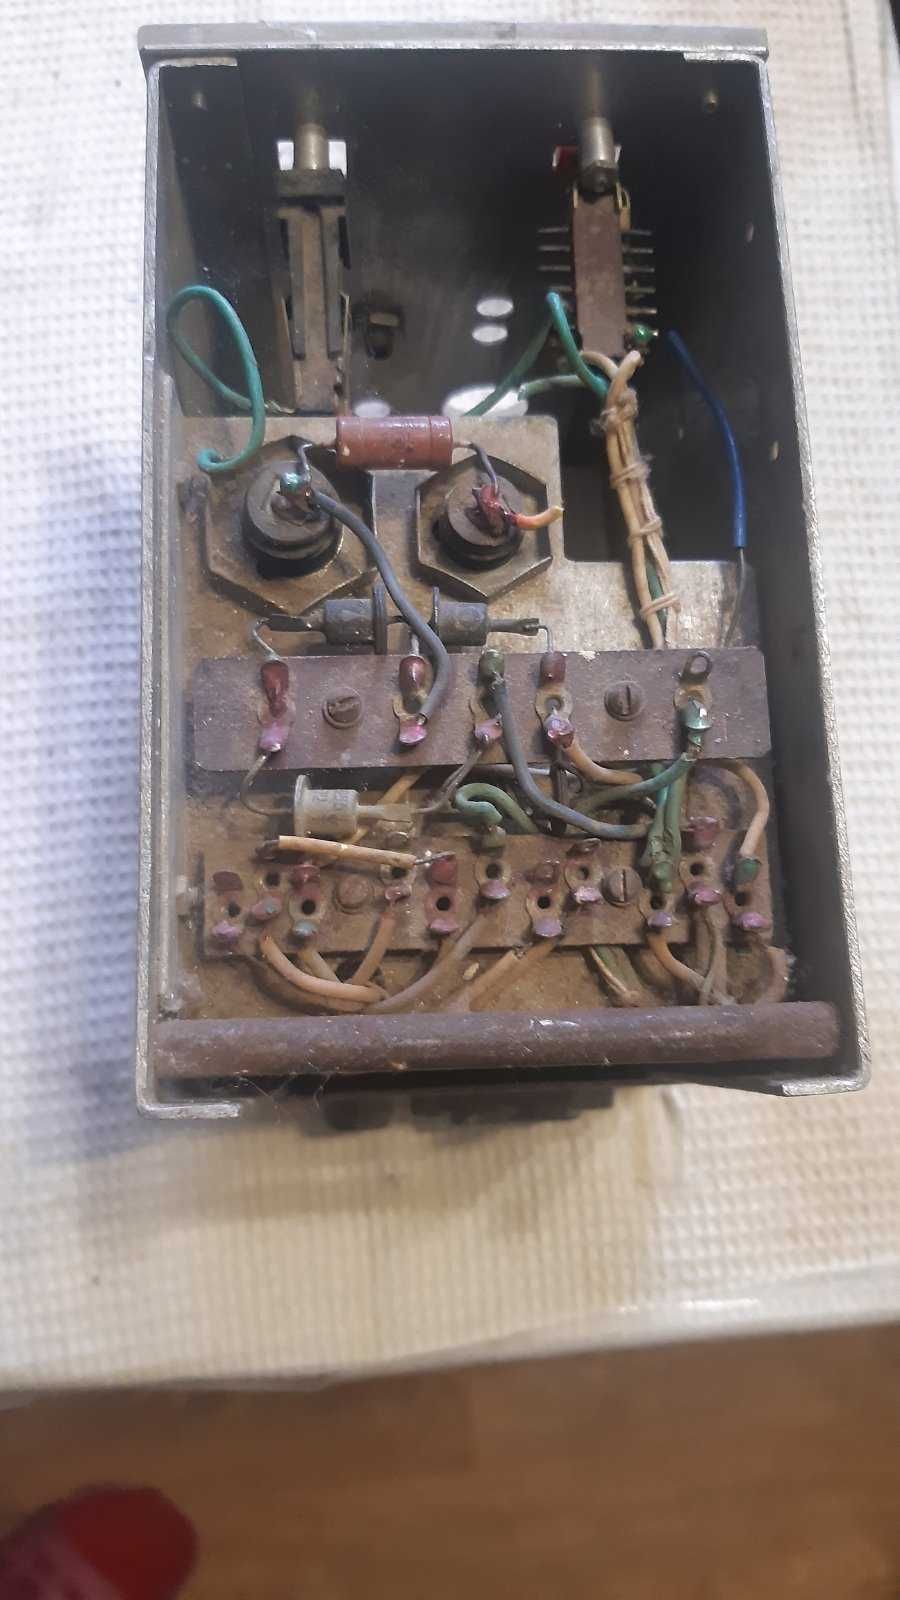 Трансформатор от лампового радиоприемника.